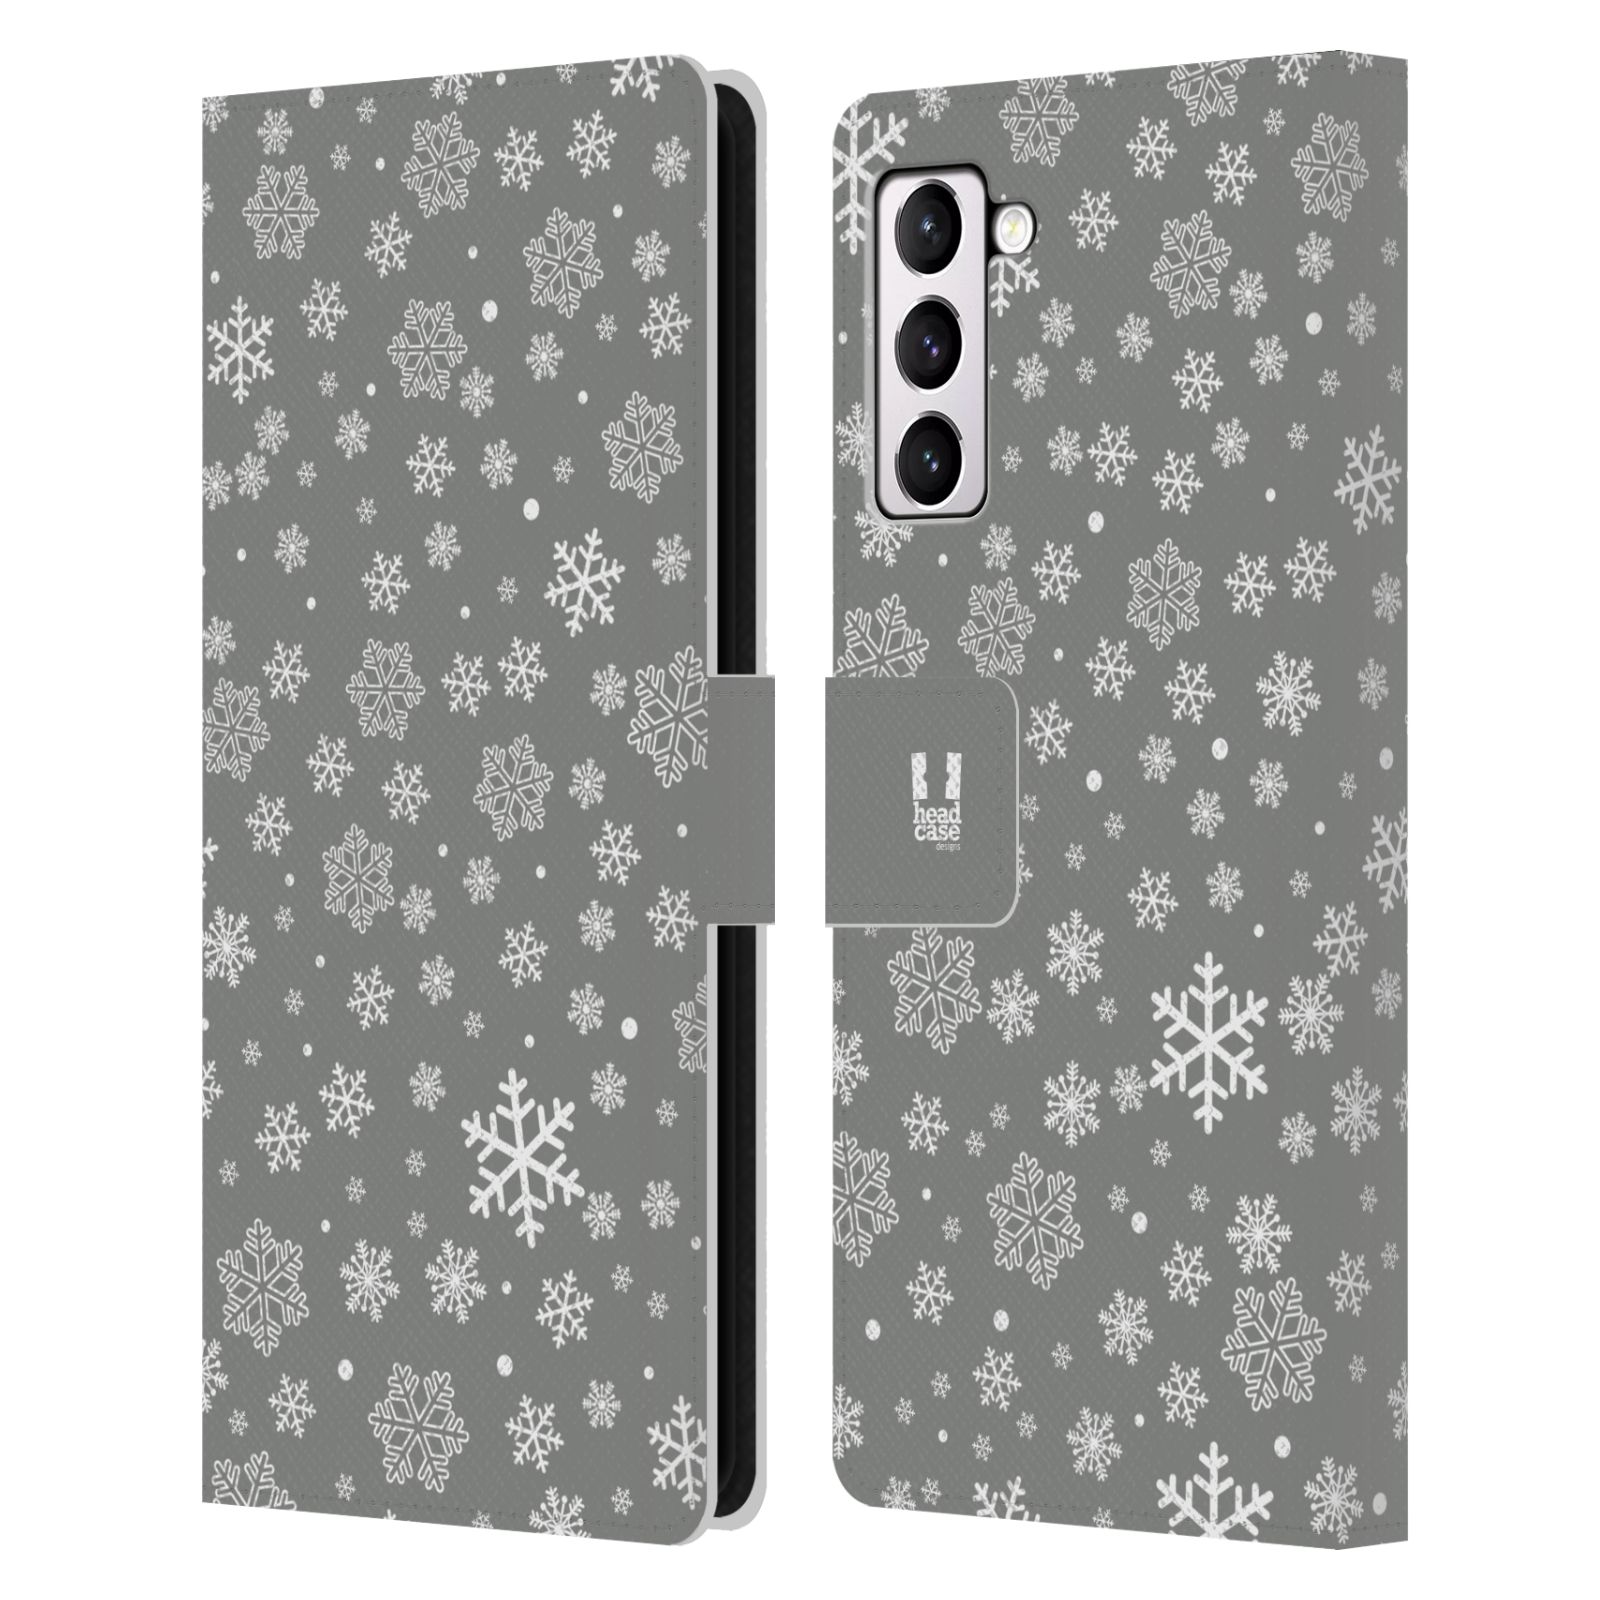 Pouzdro HEAD CASE na mobil Samsung Galaxy S21+ 5G / S21 PLUS 5G stříbrné vzory sněžná vločka